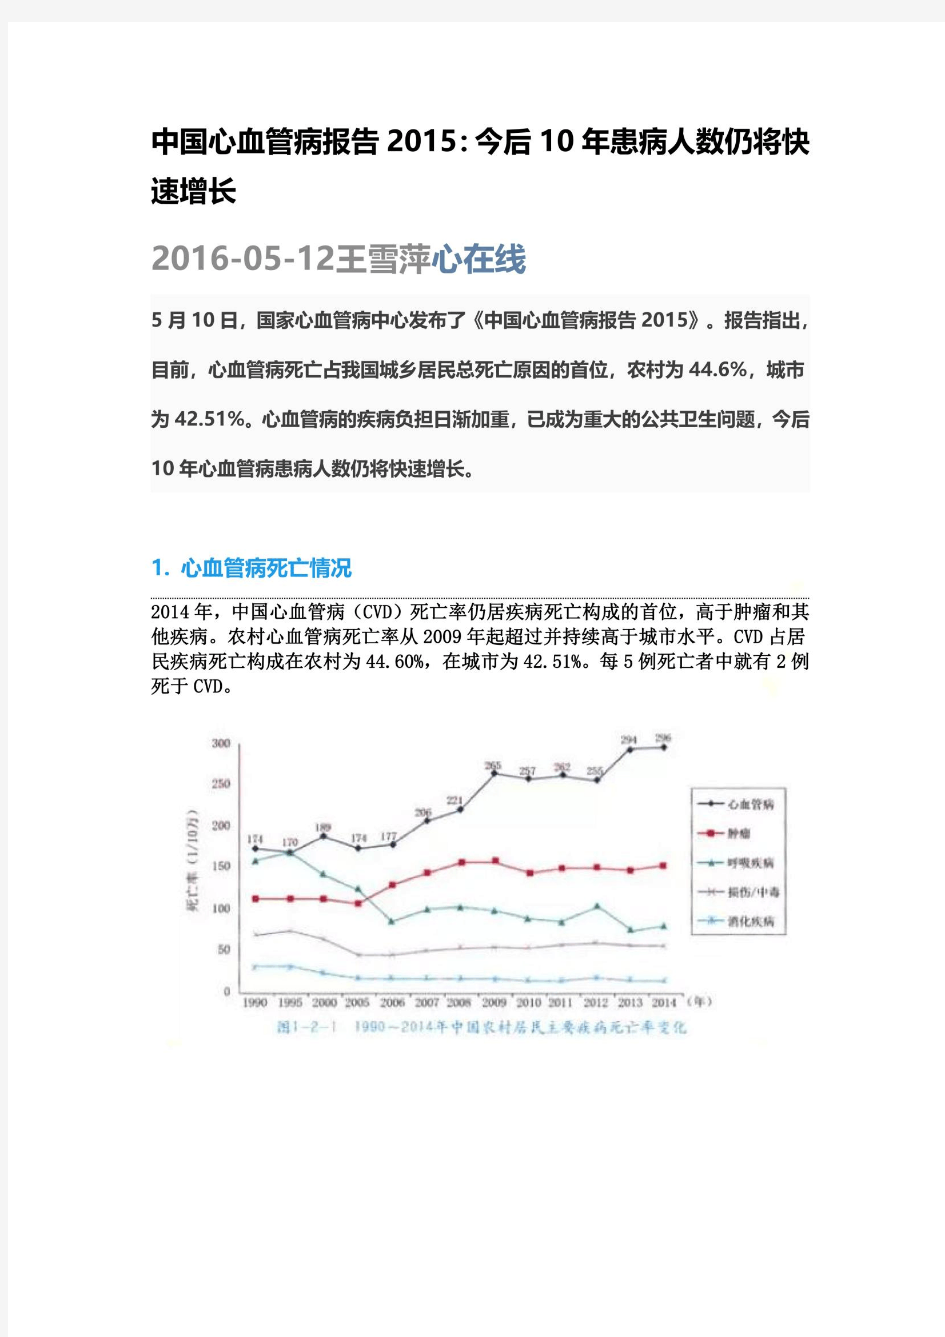 中国心血管病报告2015